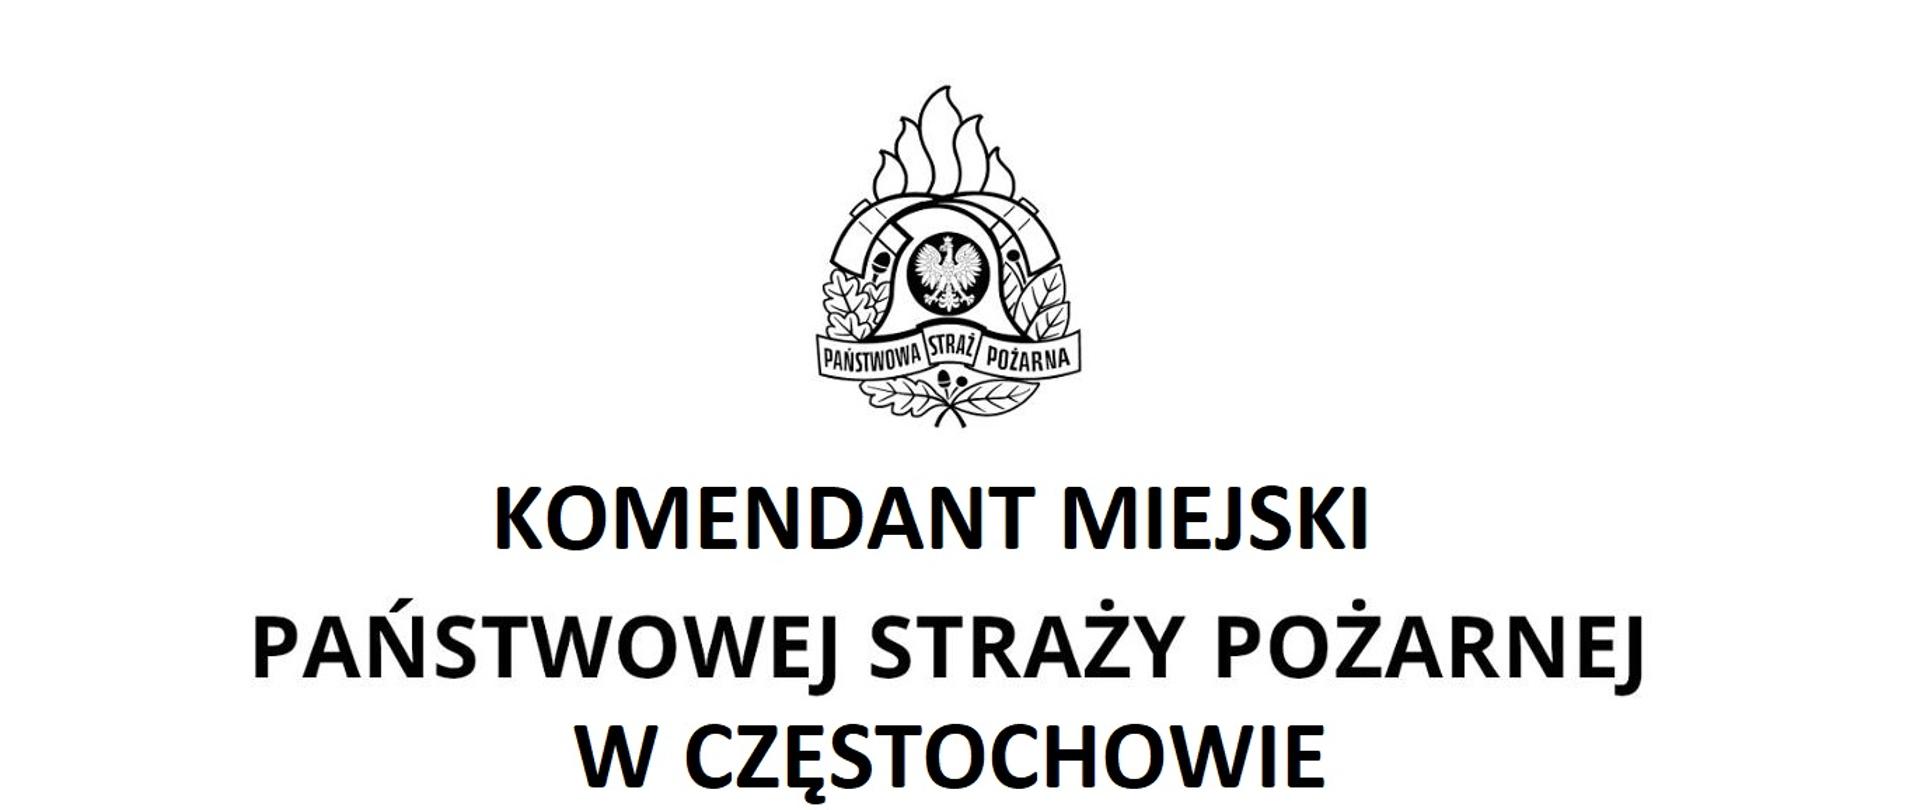 Zdjęcia przedstawia logo Państwowej Straży Pożarnej oraz napis Komendant Miejski Państwowej Straży Pożarnej w Częstochowie